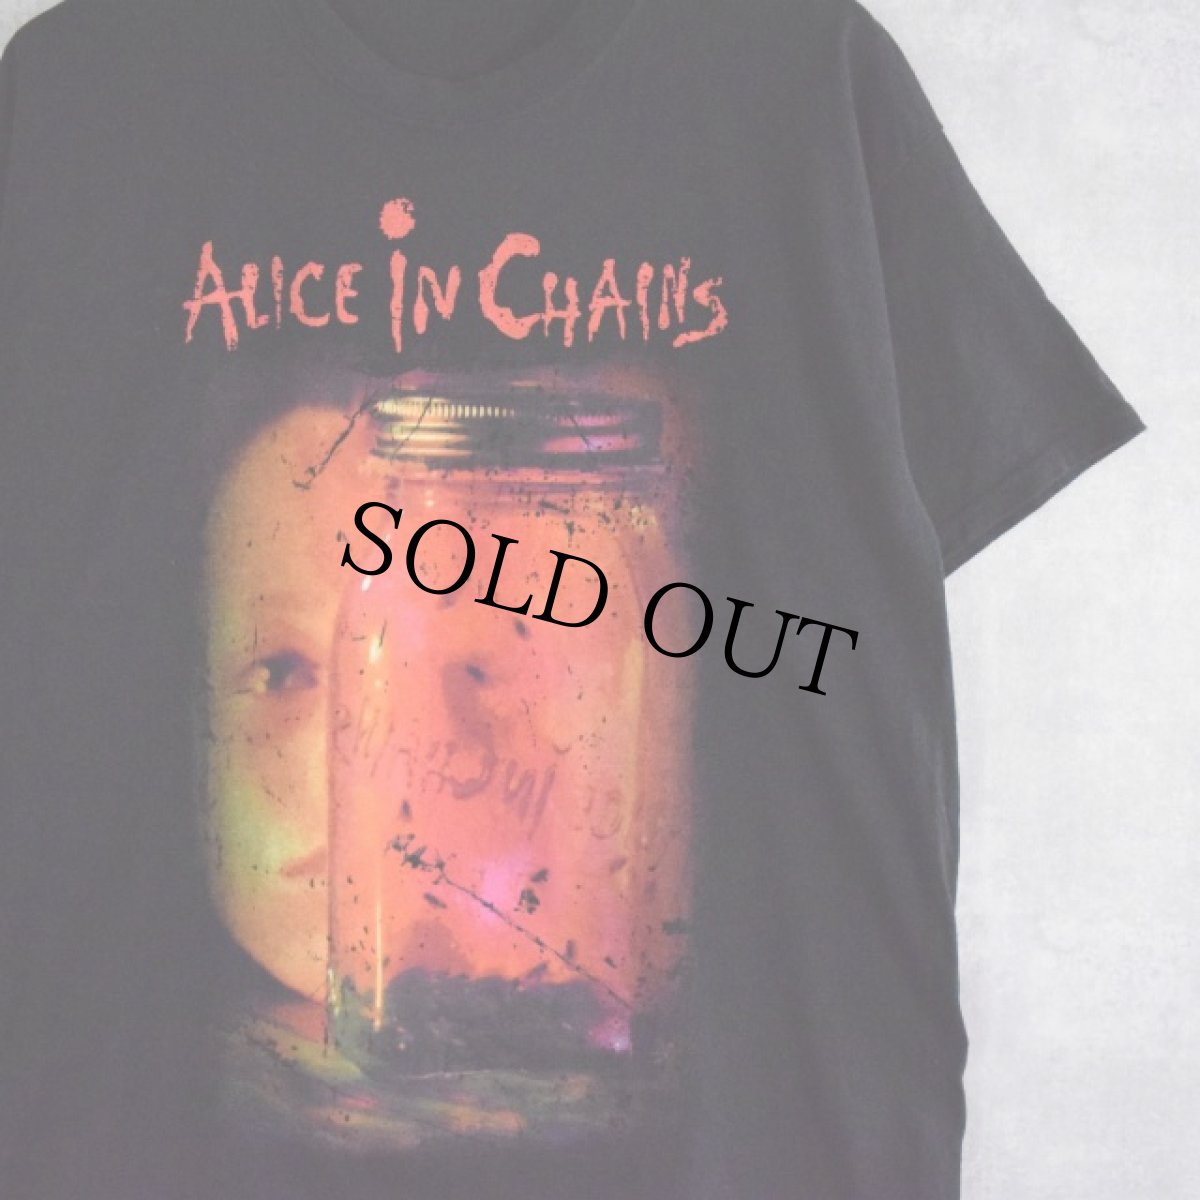 画像1: ALICE IN CHAINS ロックバンドTシャツ (1)